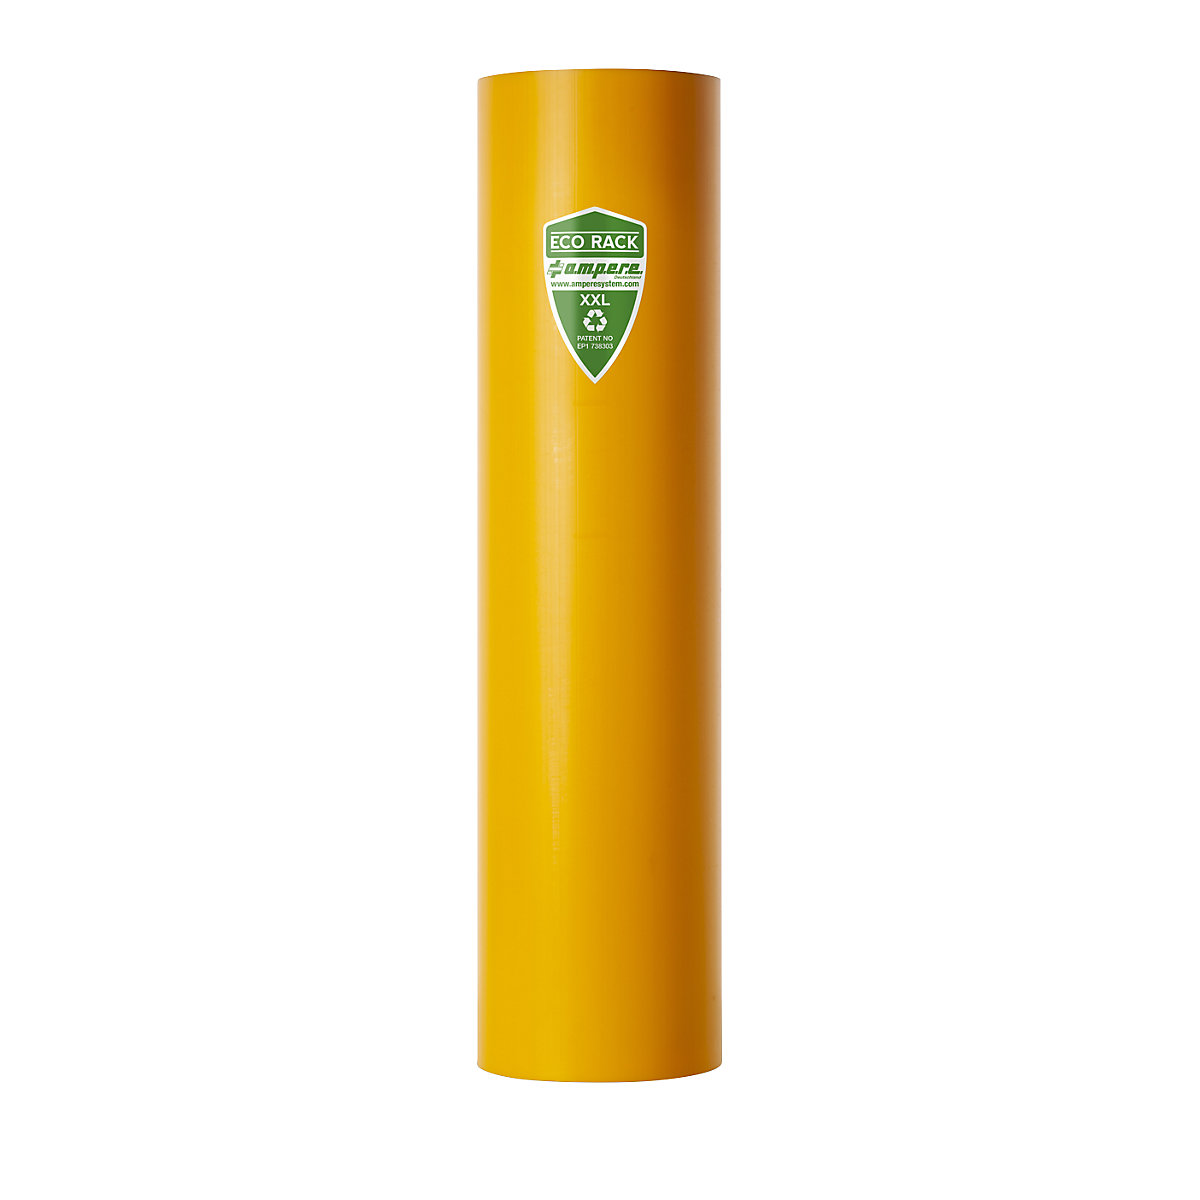 Regalanfahrschutz Ampere, aus recyceltem Kunststoff, Regalständerbreite 111 – 120 mm